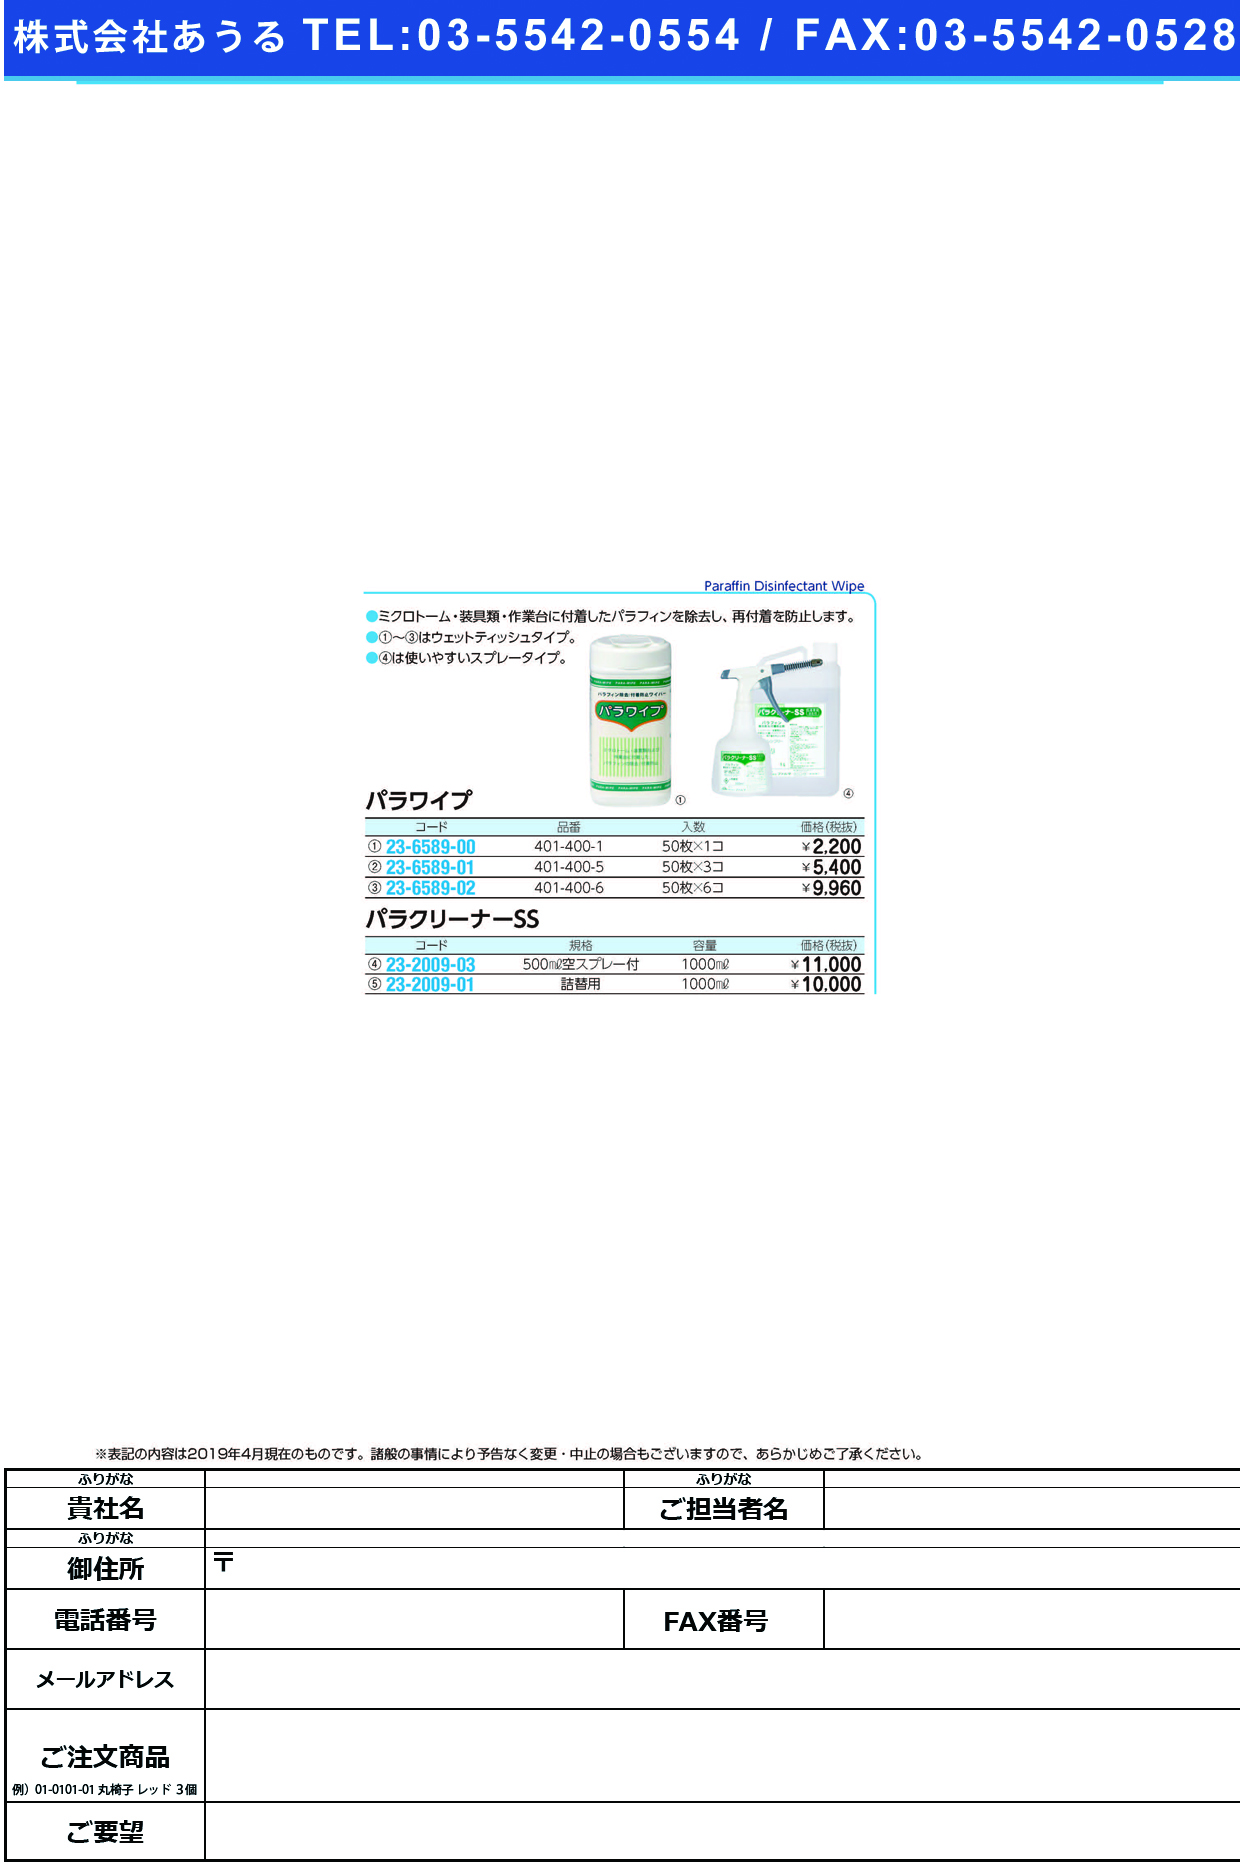 (23-6589-00)パラワイプ 401-400-1(50ﾏｲｲﾘ) ﾊﾟﾗﾜｲﾌﾟ【1個単位】【2019年カタログ商品】